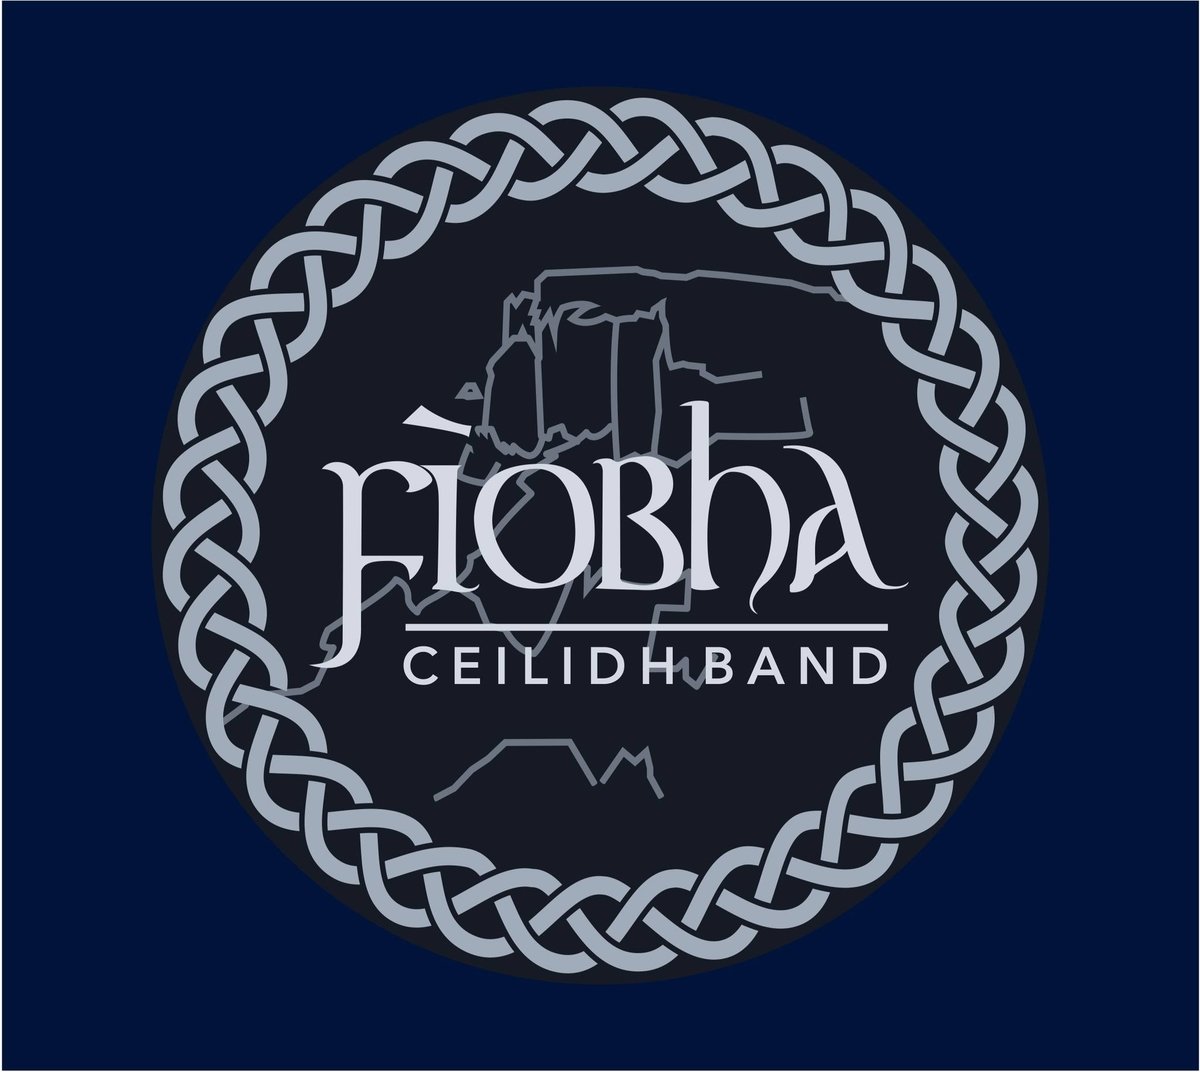 Fiobha Ceilidh Band logo